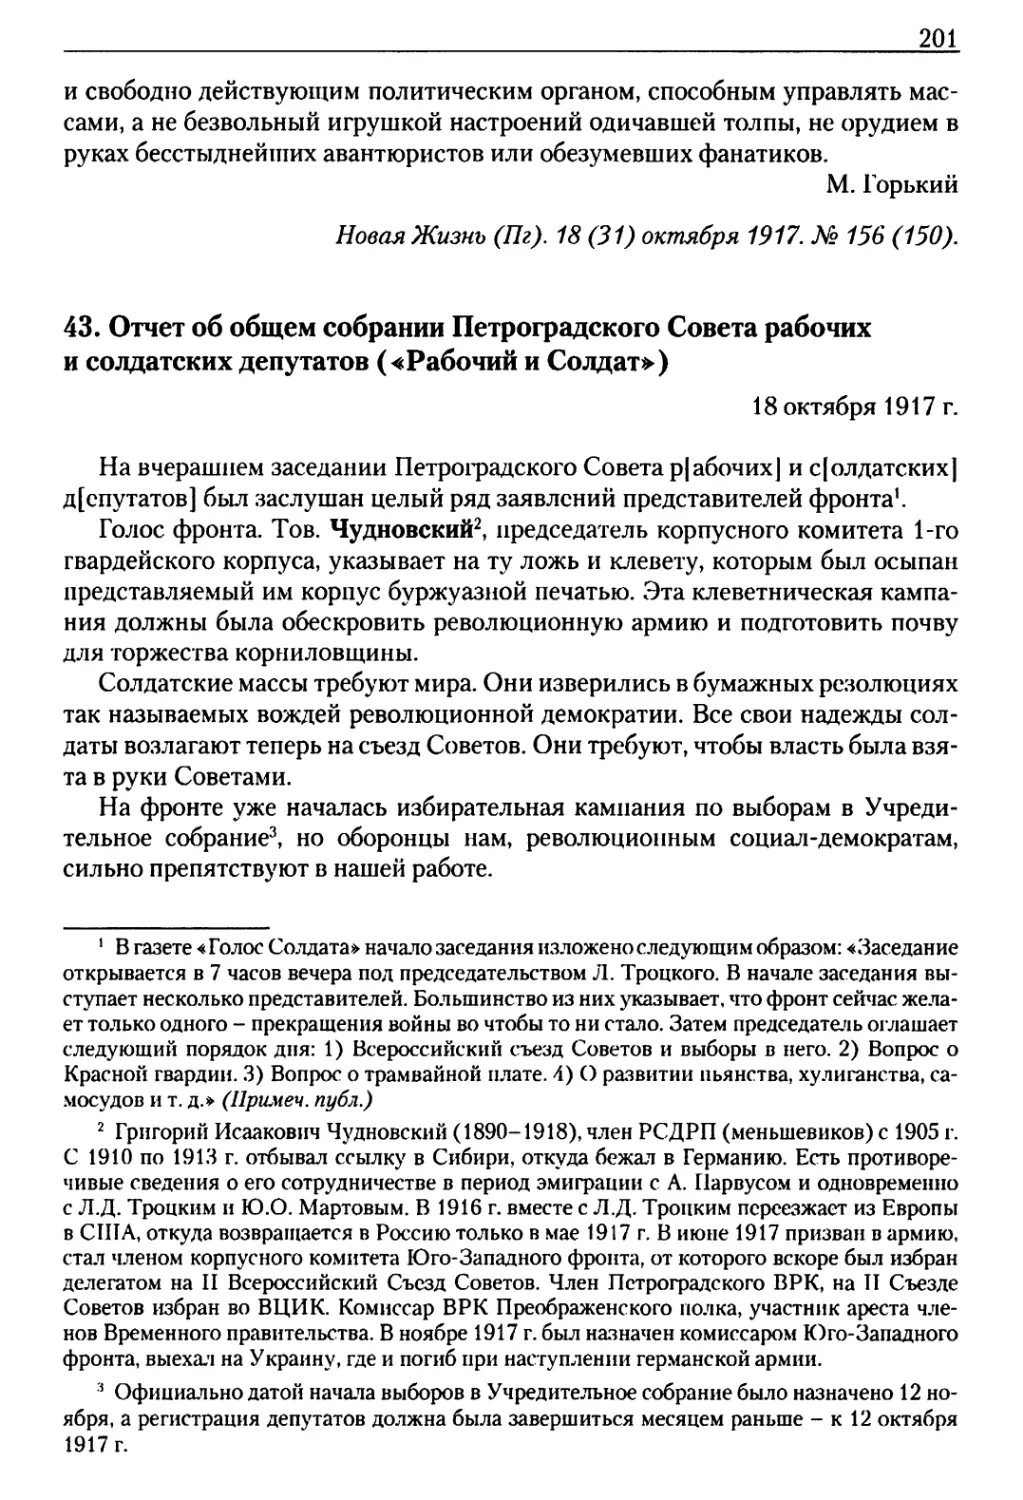 43. Отчет об общем собрании Петроградского Совета рабочих и солдатских депутатов